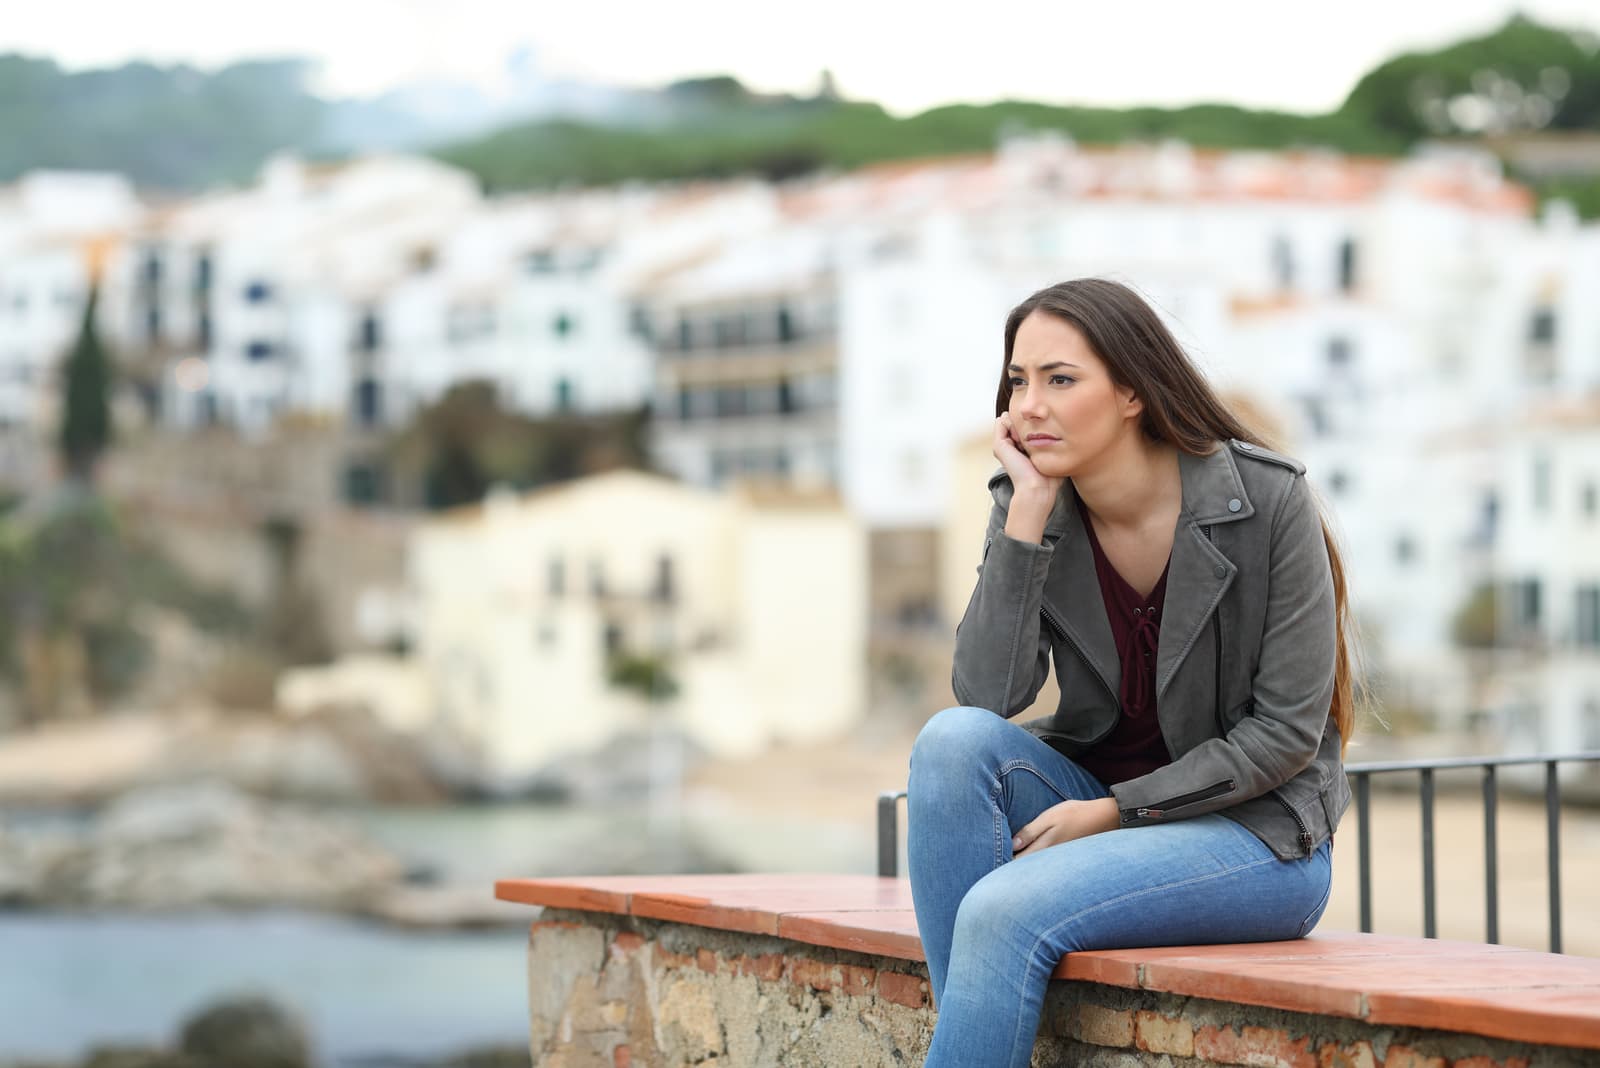 donna che guarda lontano seduta su un cornicione in una città costiera